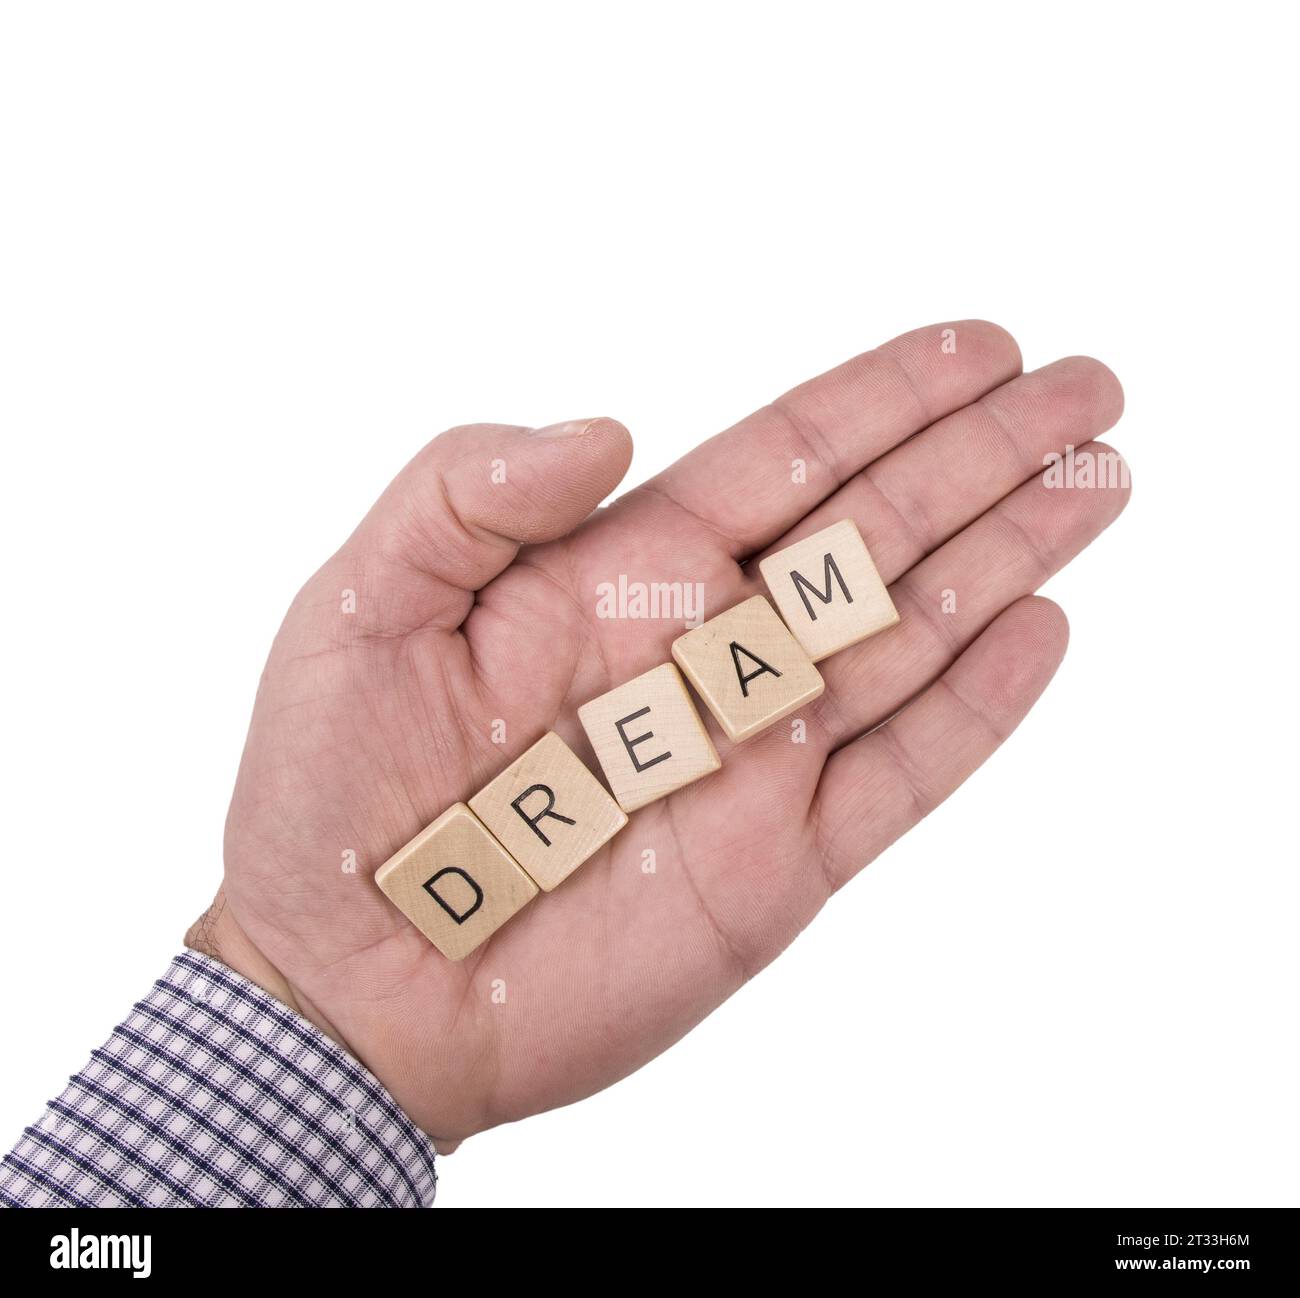 Le mot Dream sur la paume d'une main masculine sur un fond transparent Banque D'Images